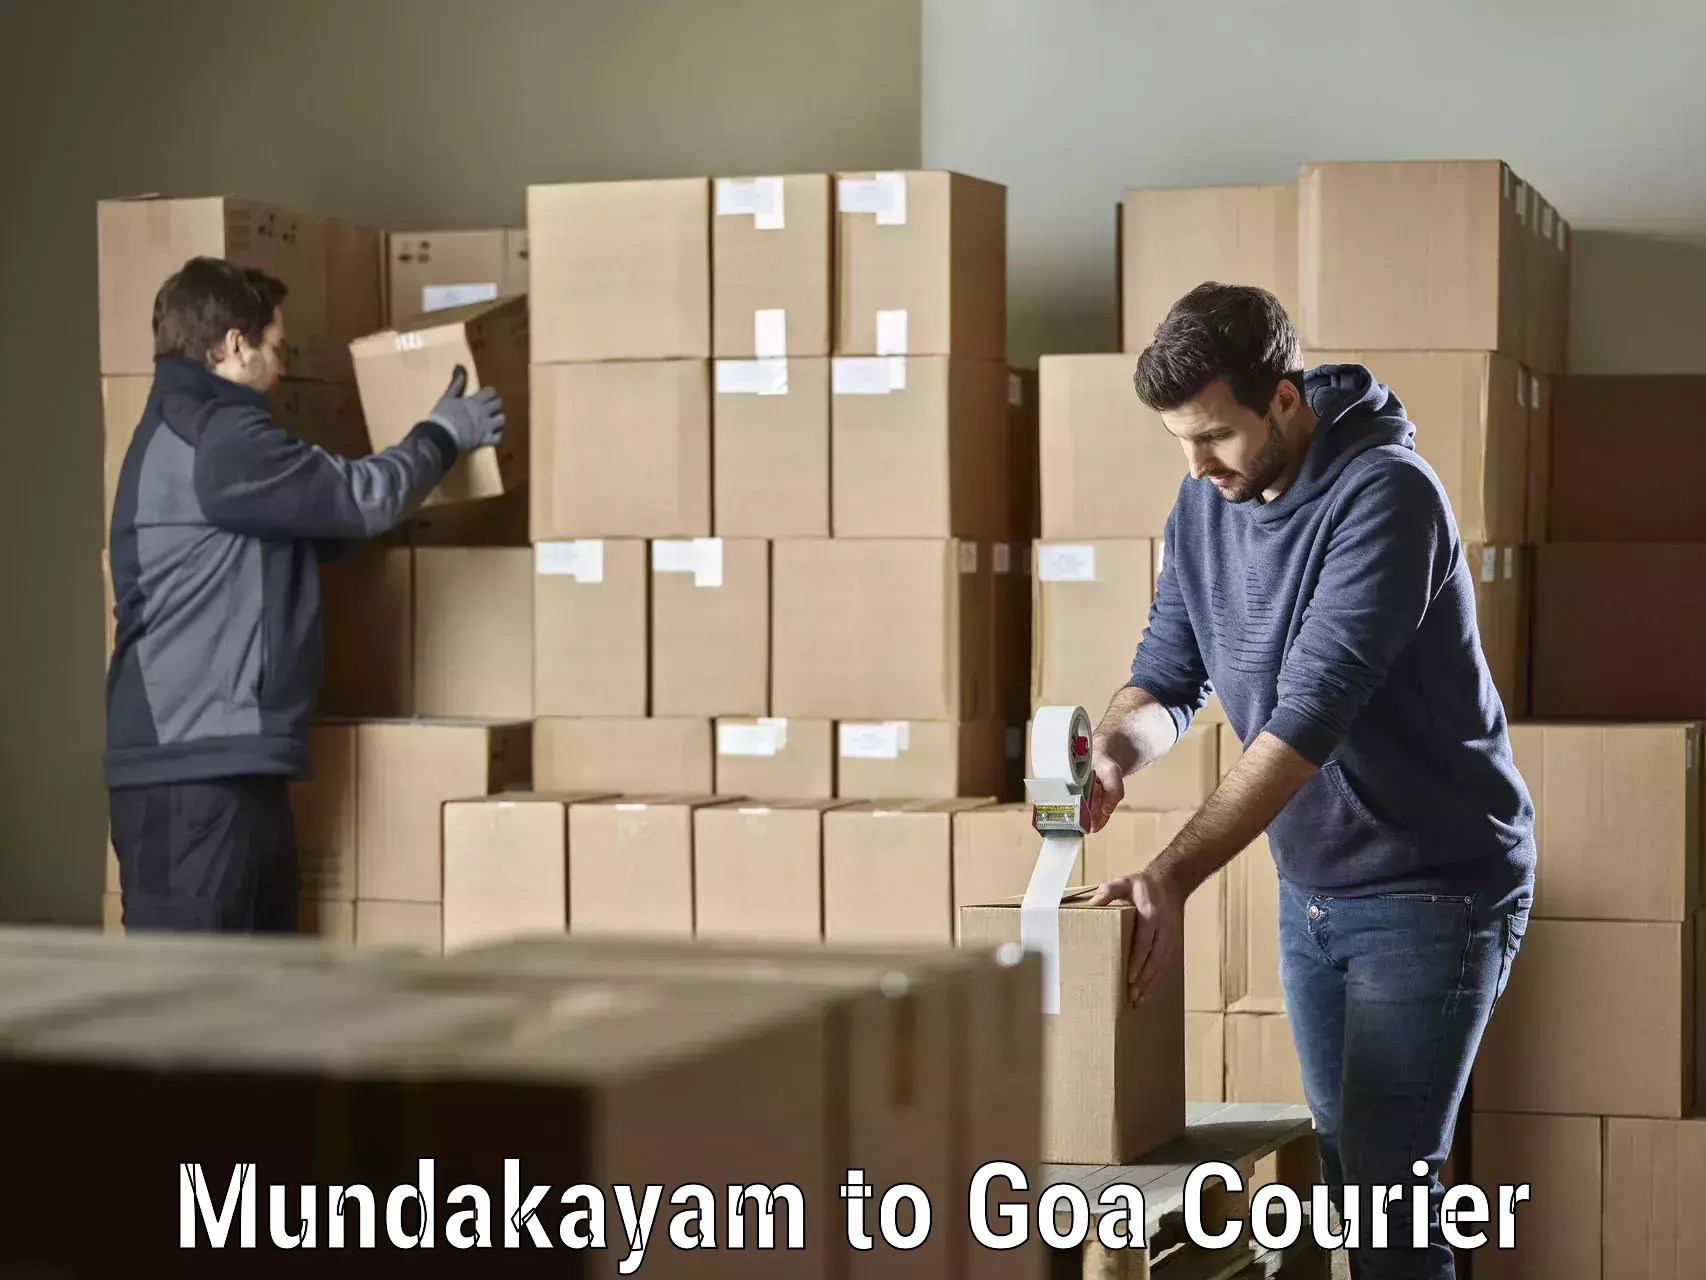 Global courier networks Mundakayam to Goa